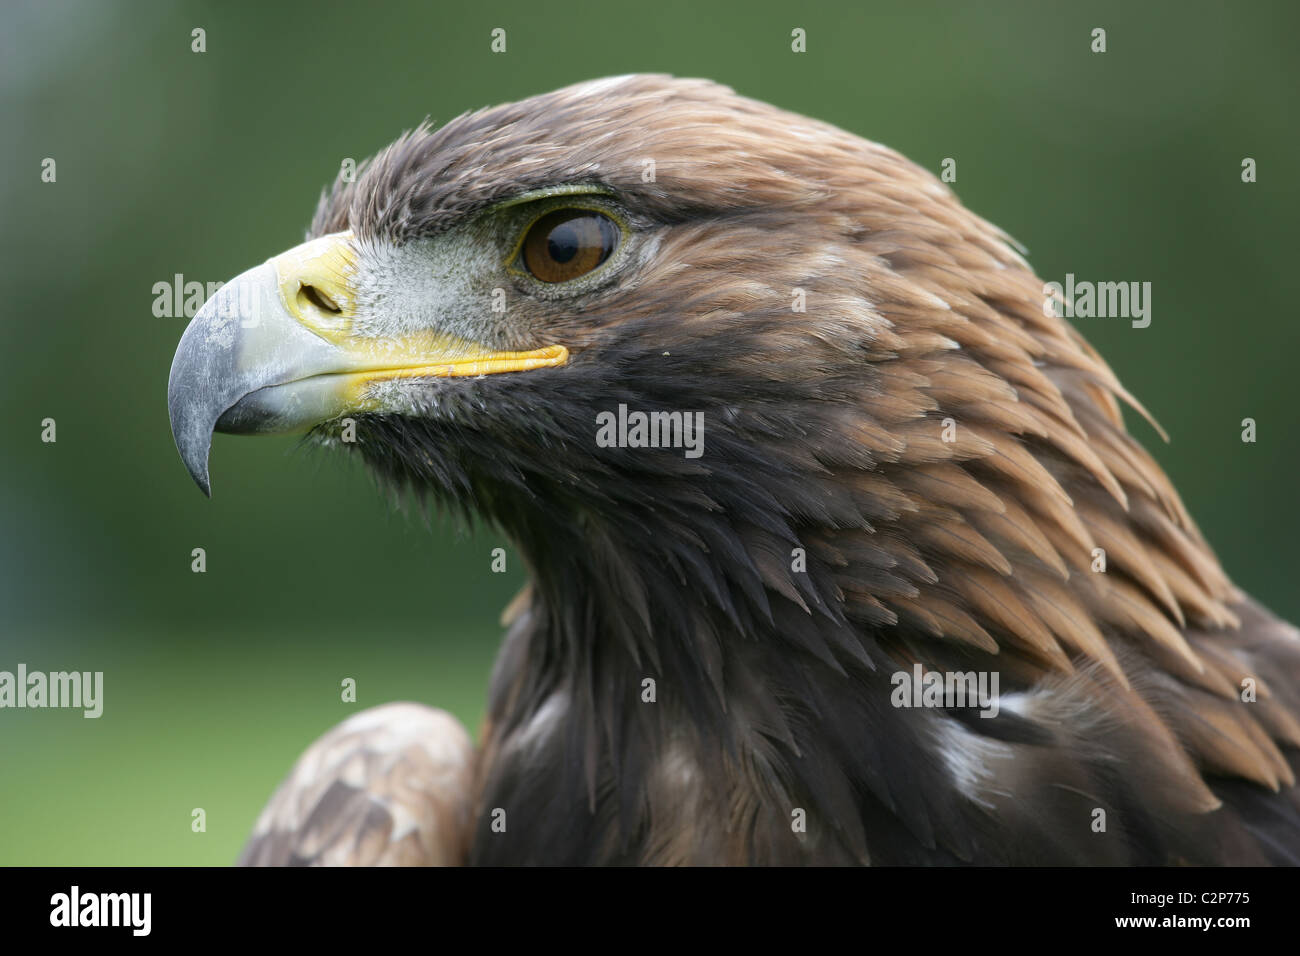 Close-up of Scottish [] [Golden Eagle Aquila chrysaetos] avec vue latérale de la tête et le bec Banque D'Images